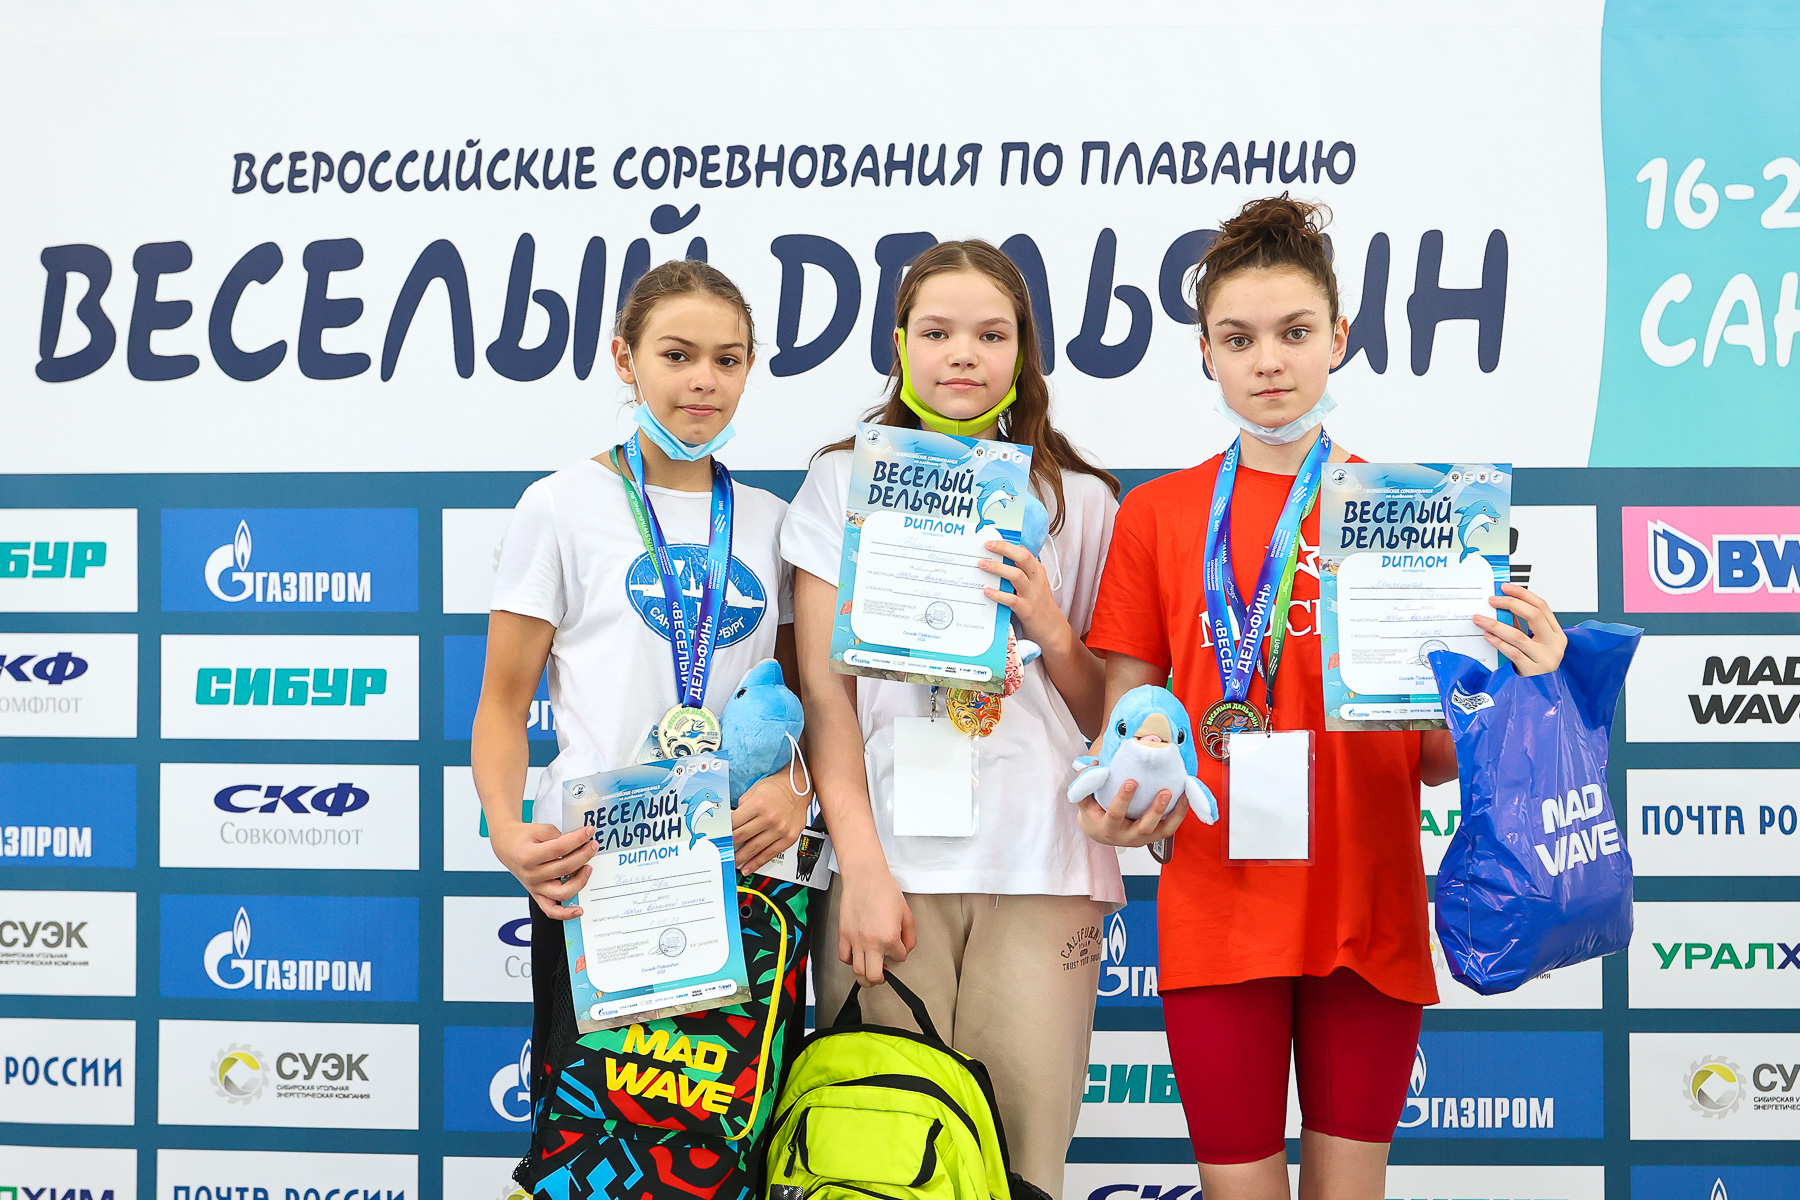 Протоколы веселый дельфин. Соревнования по плаванию веселый Дельфин. Всероссийские соревнования по плаванию веселый Дельфин. Весёлый Дельфин 2022 плавание. Соревнования по плаванию 2022 дети.